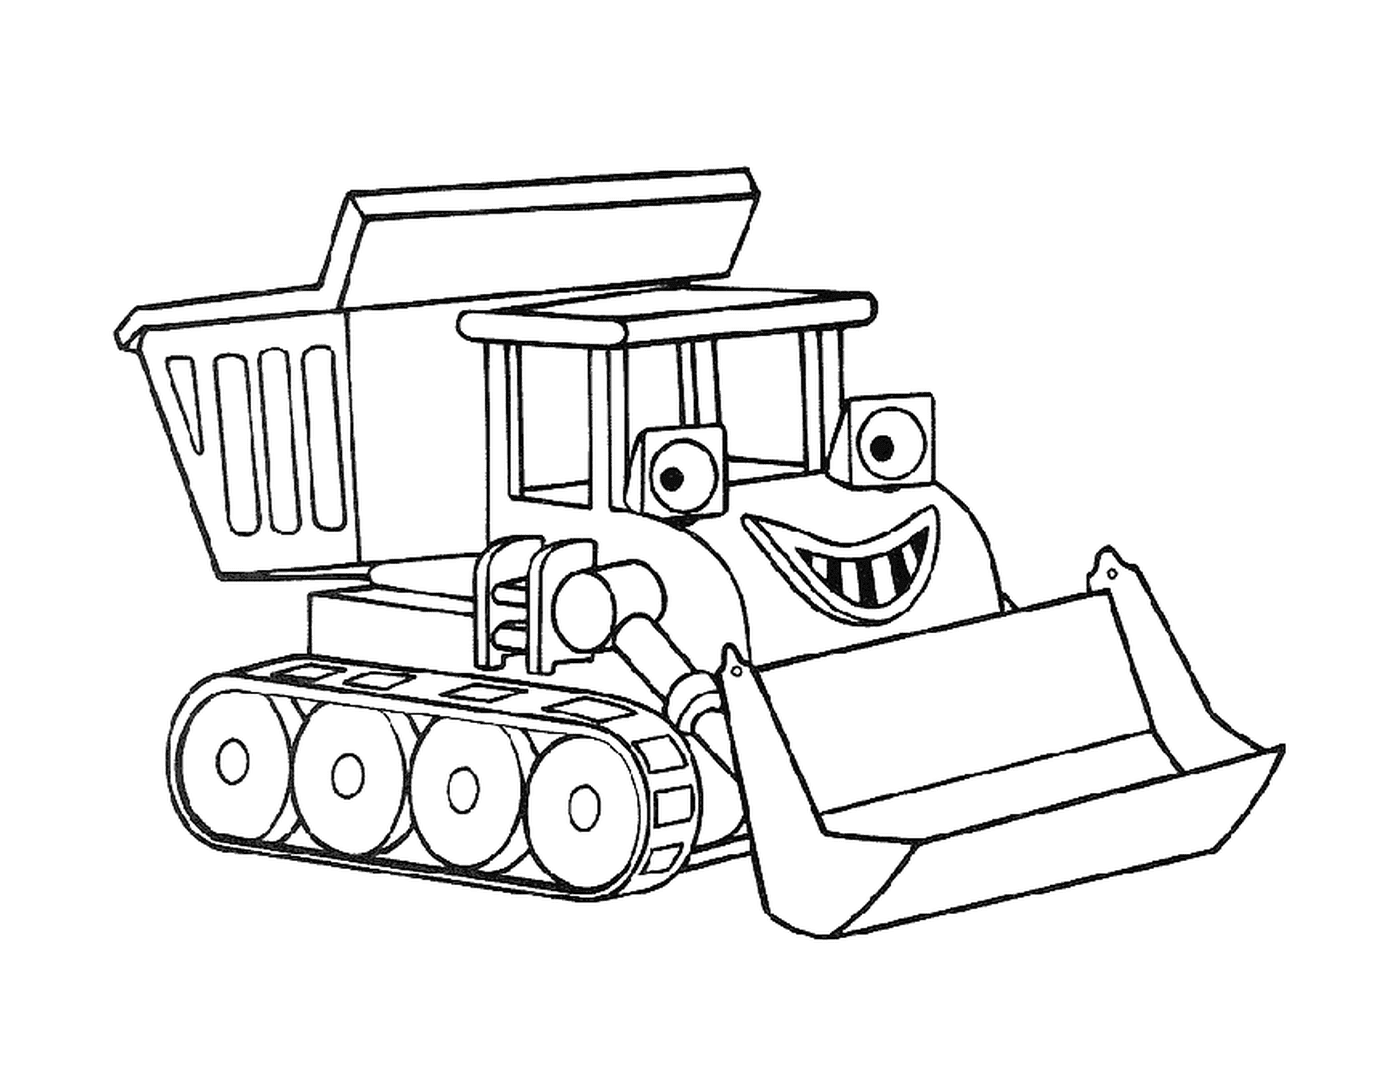   Un bulldozer de dessin animé 